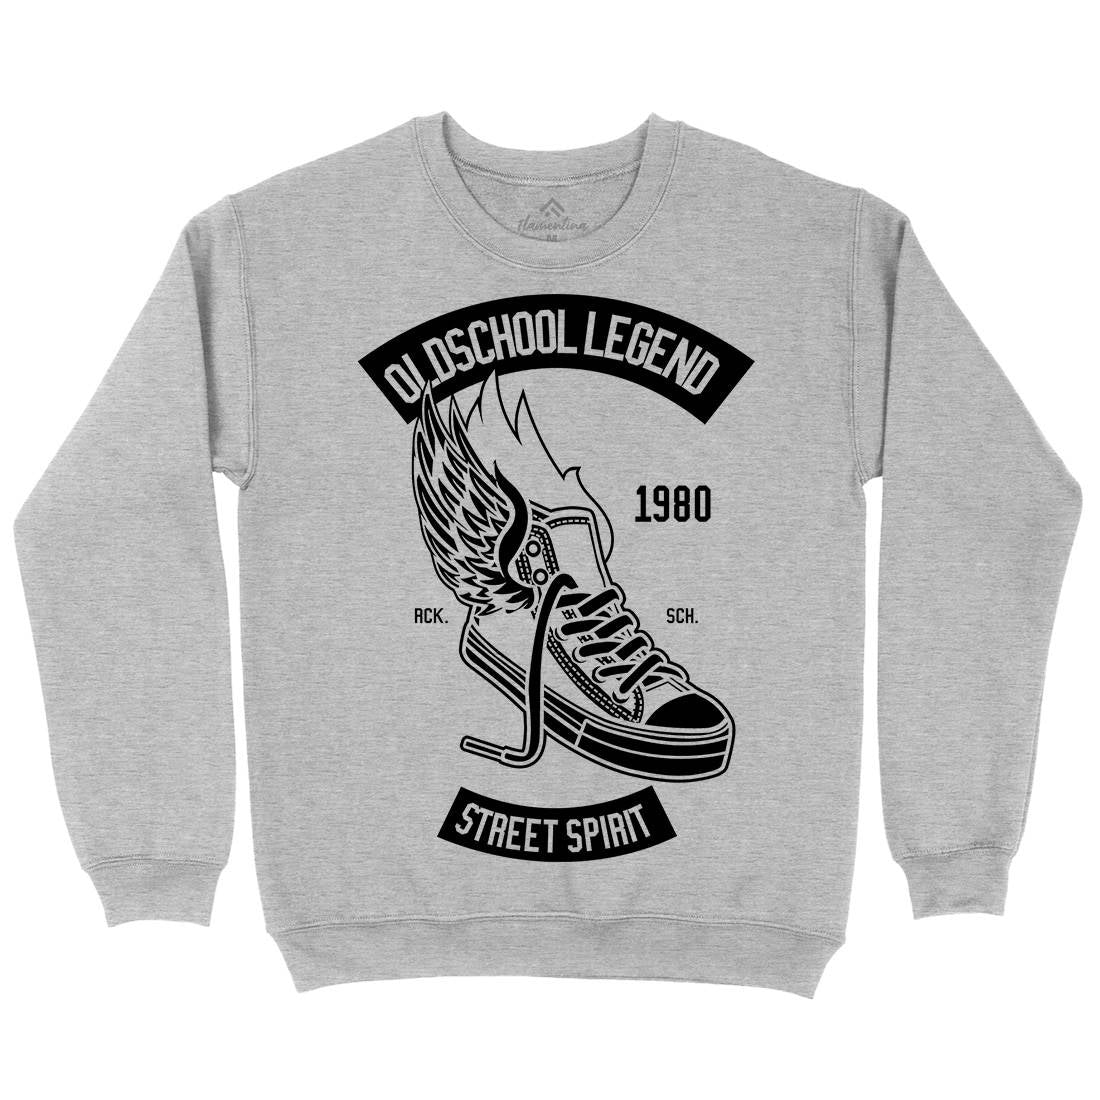 Oldschool Legend Kids Crew Neck Sweatshirt Retro B594